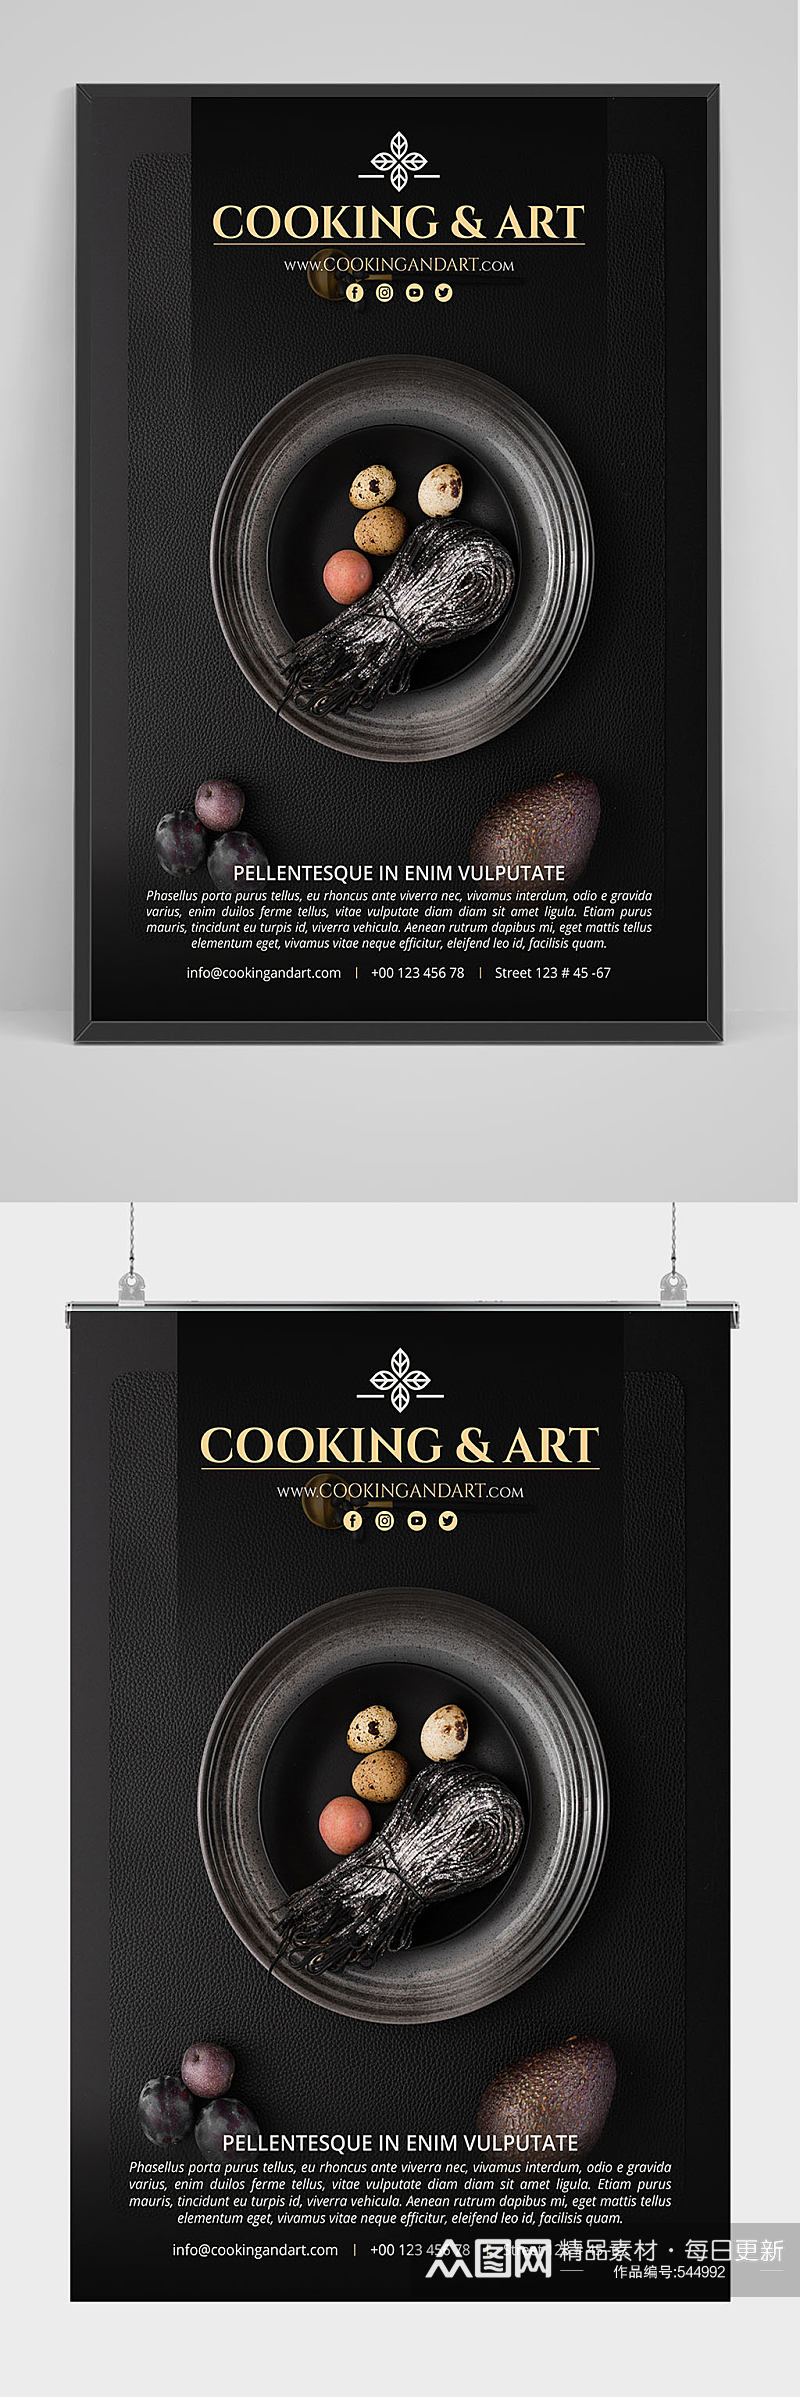 黑色高端食物食材海报设计素材